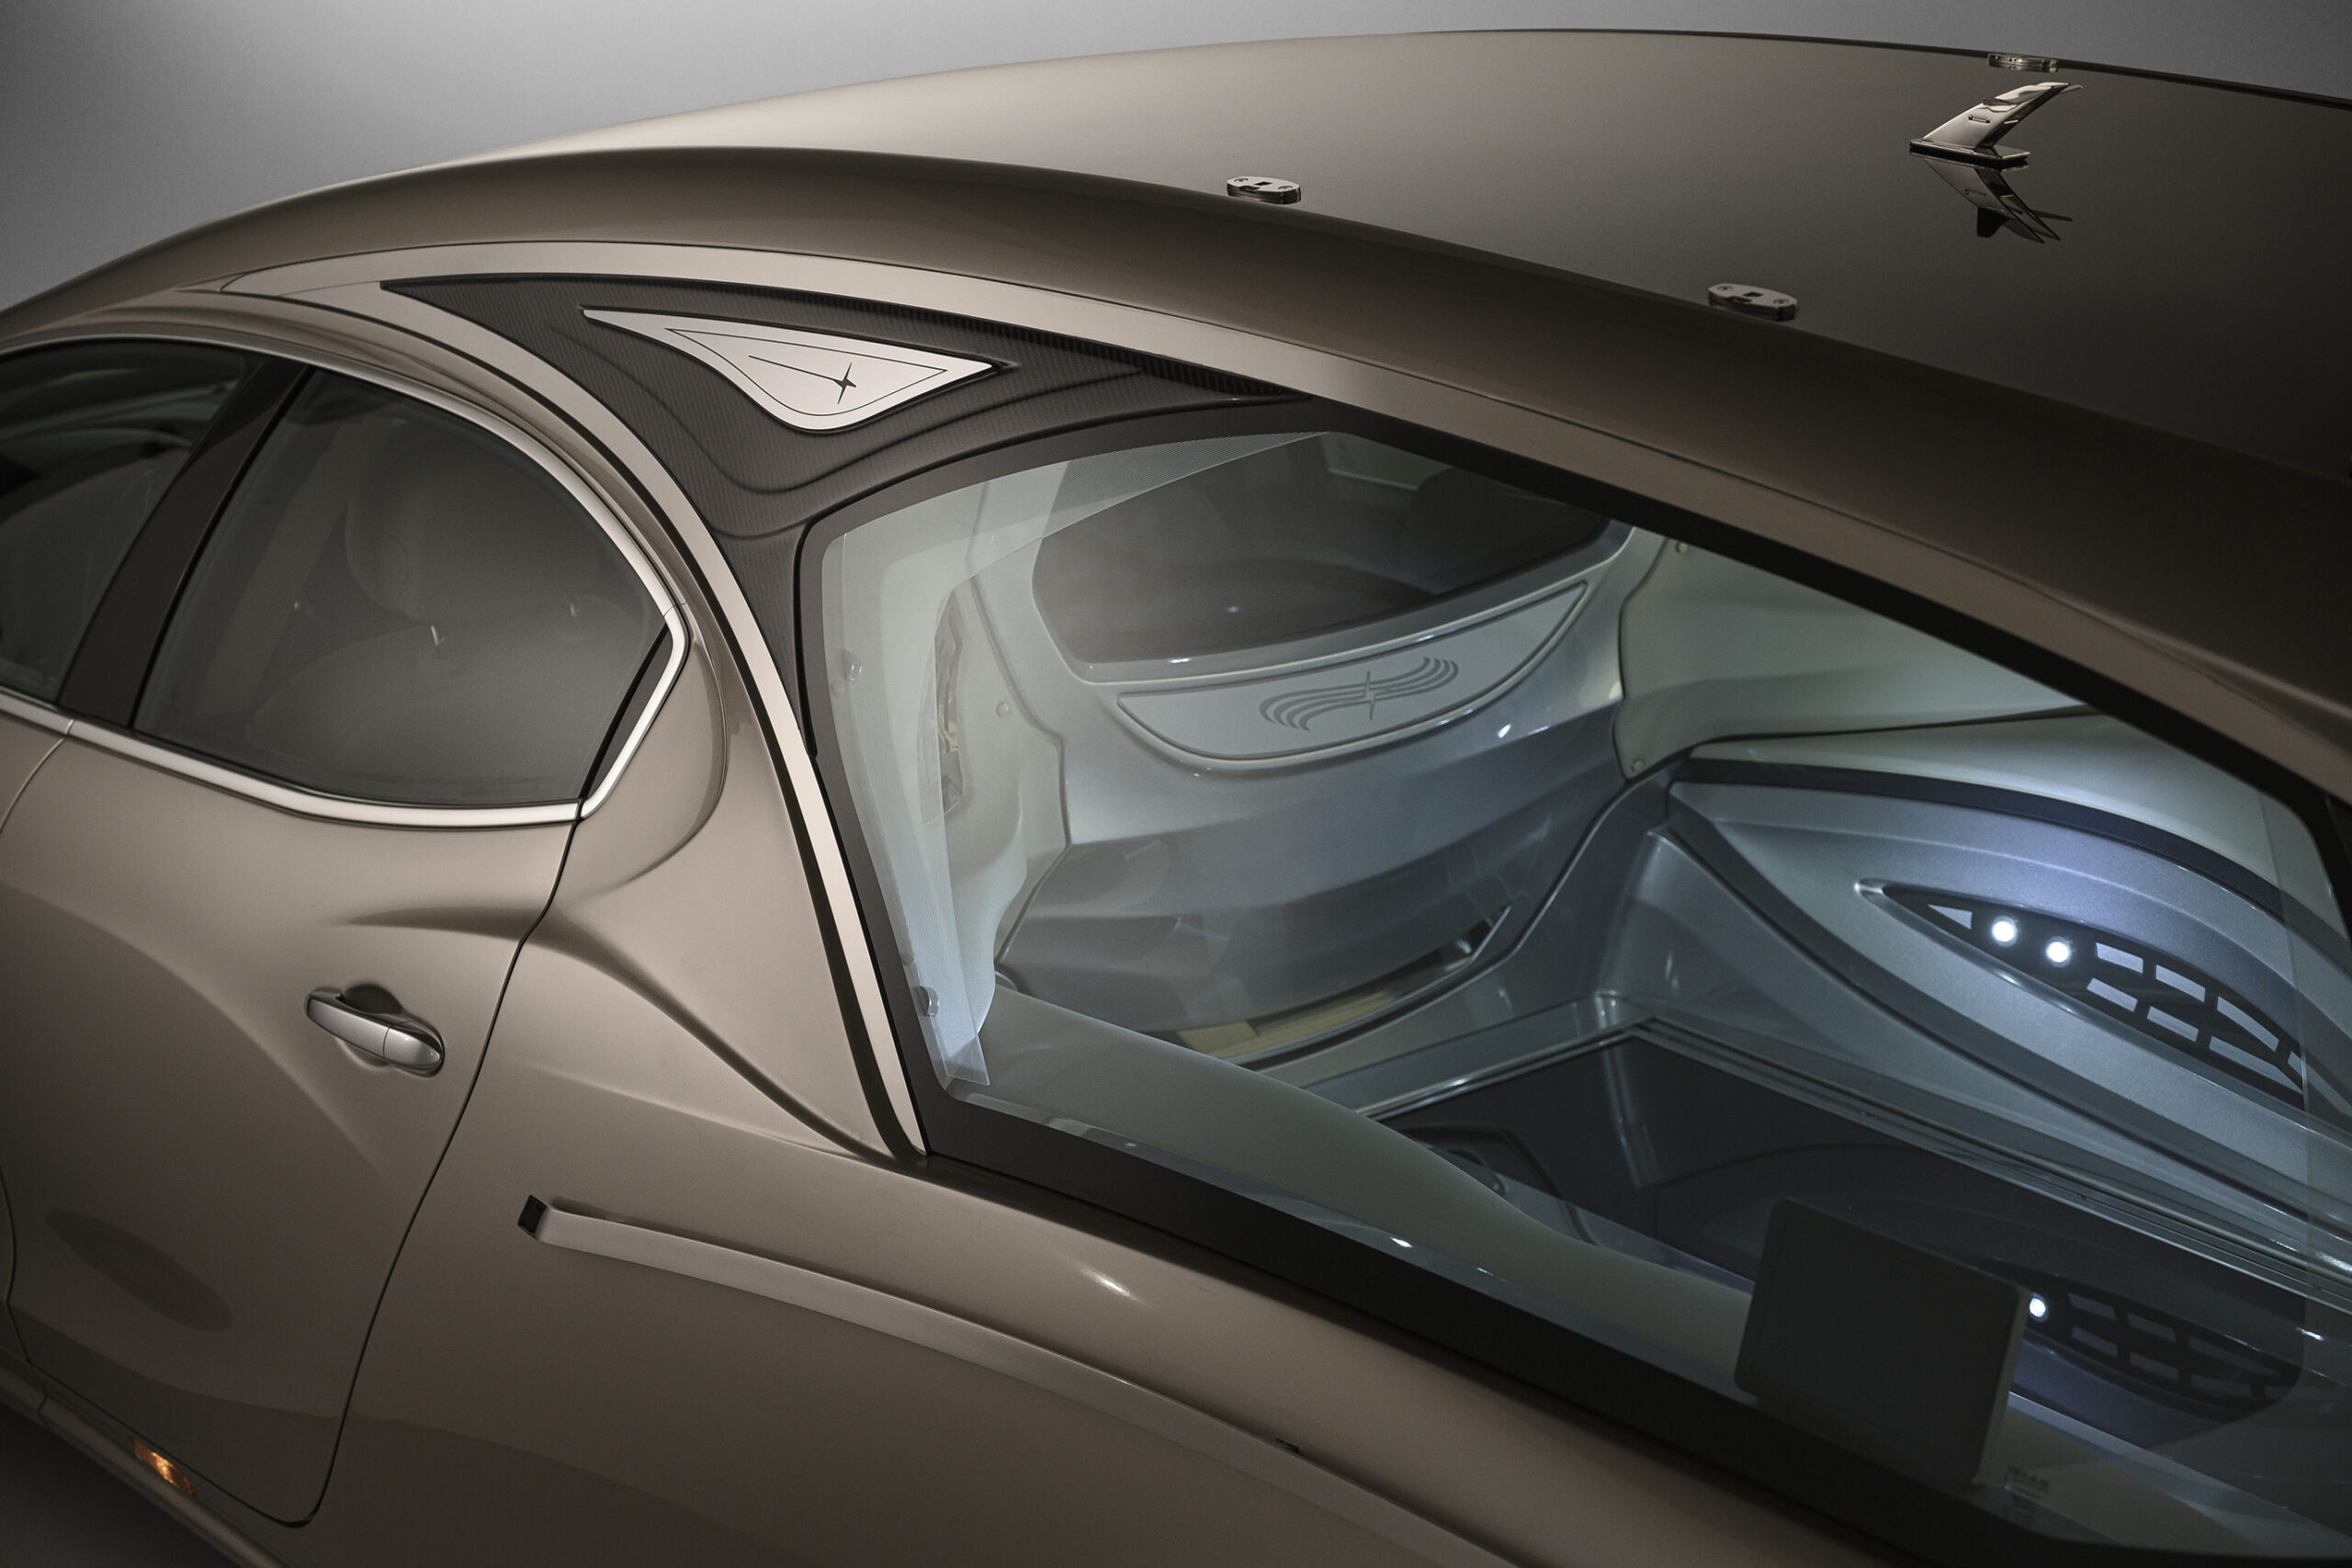 Cromature e carbonio Vekal autofunebre meccnaica Maserati Ghibli